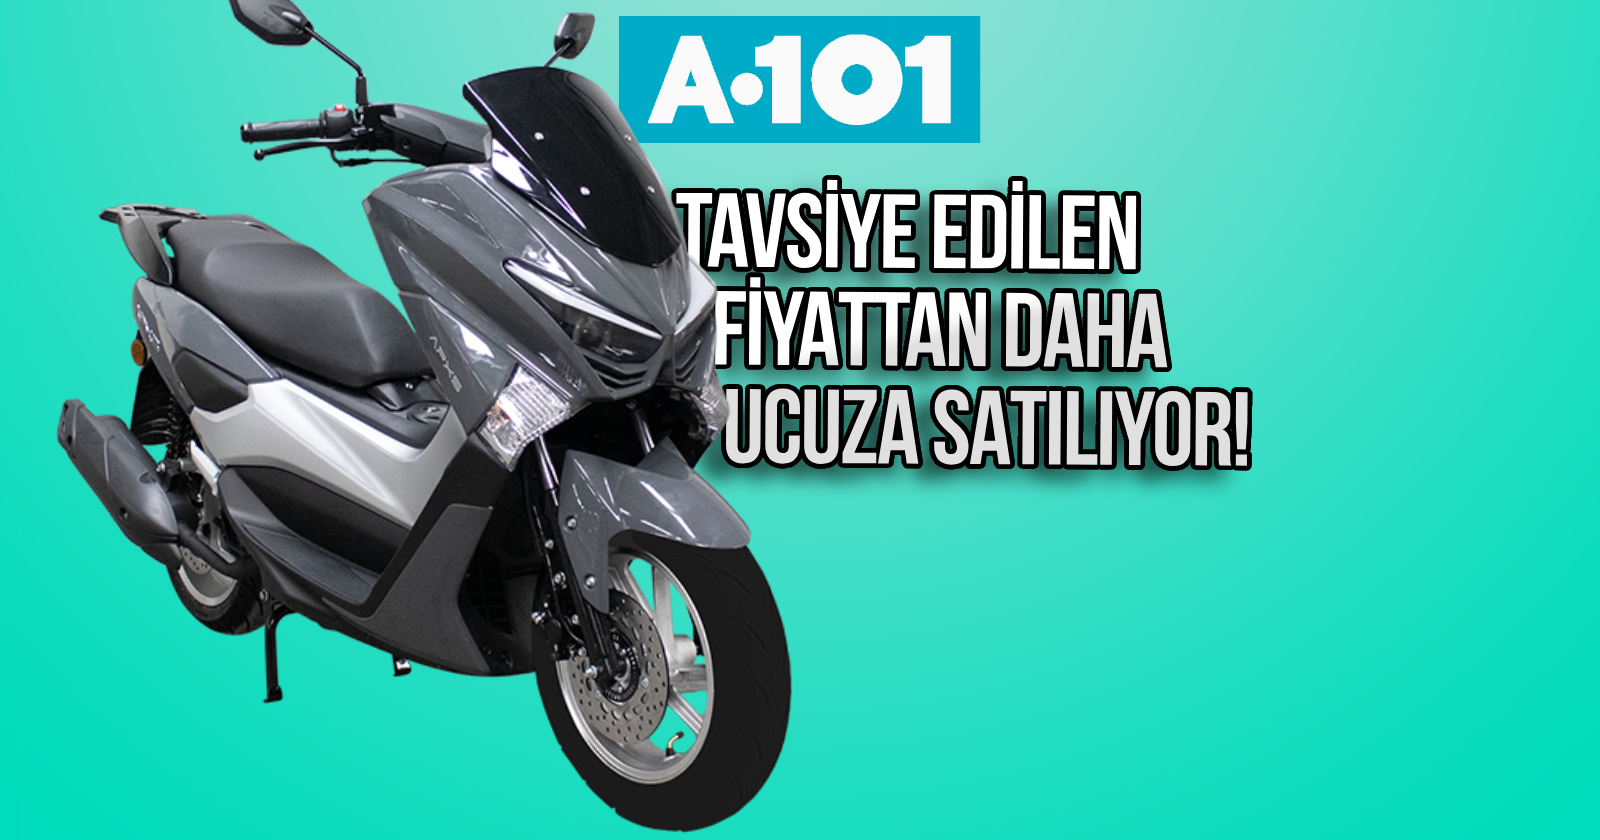 a101-ucuz-motosiklet-apec-apx5-150-cc-maxi-scooter-kapak.jpg